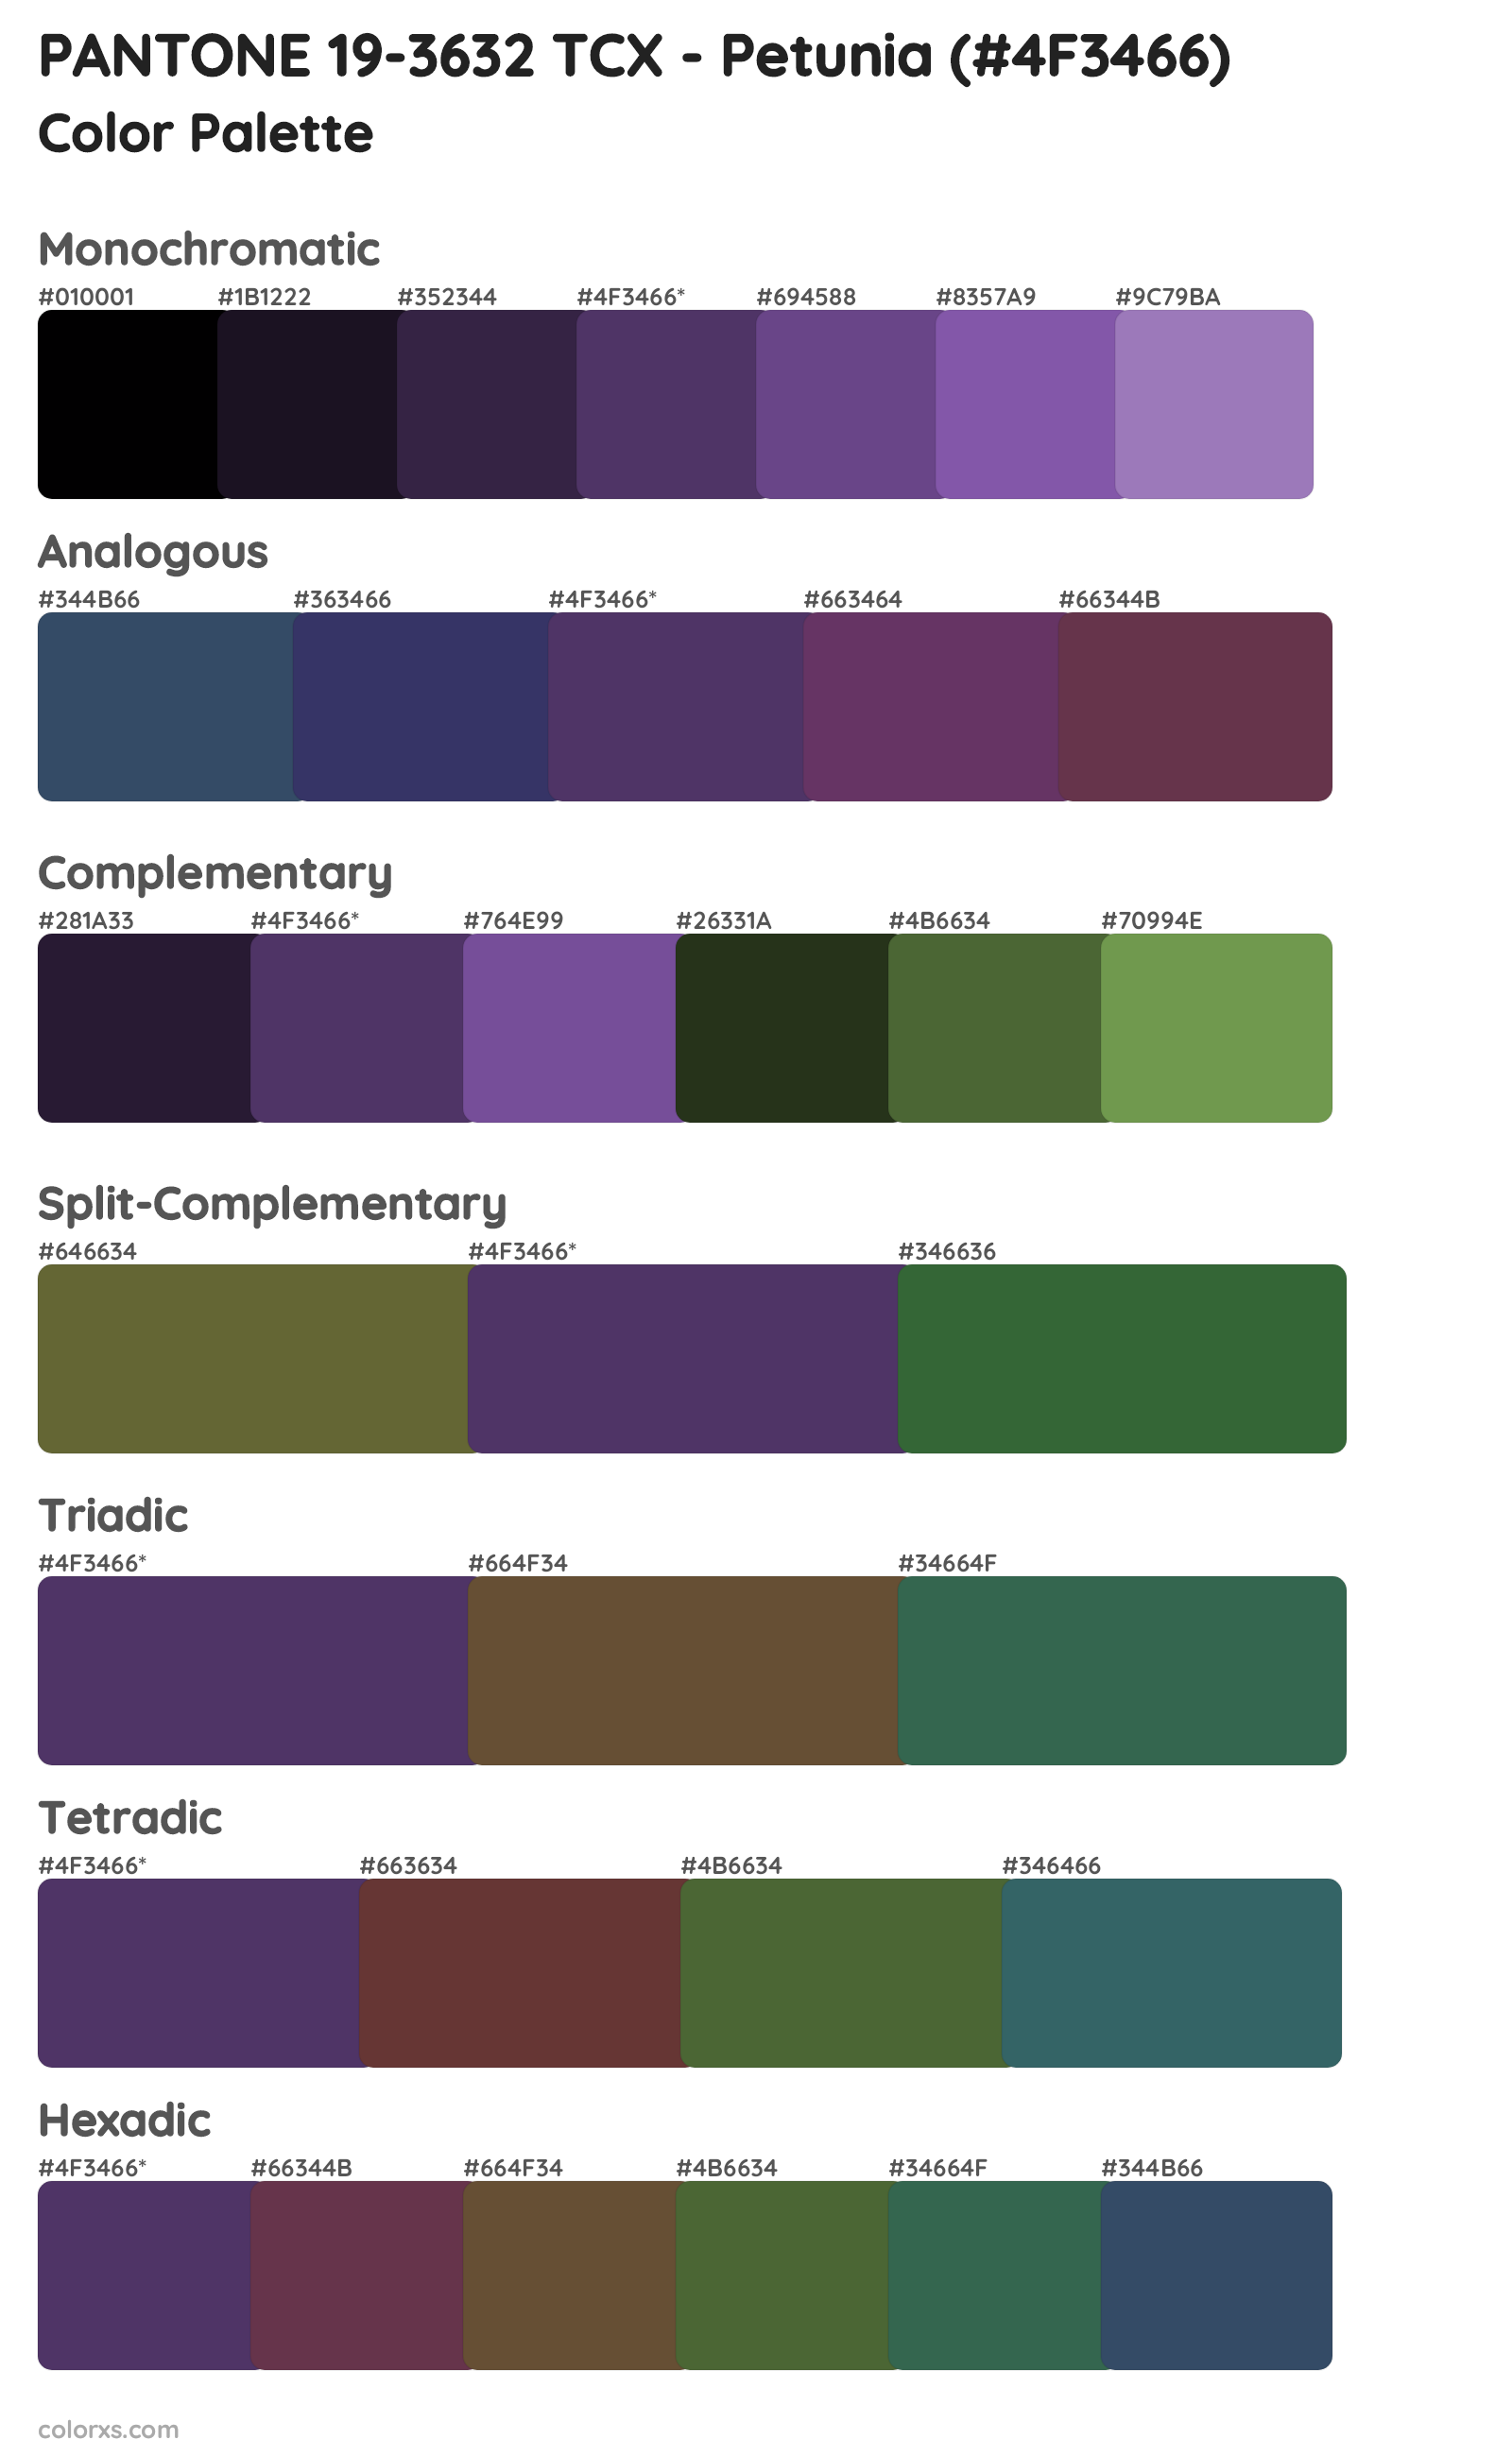 PANTONE 19-3632 TCX - Petunia Color Scheme Palettes